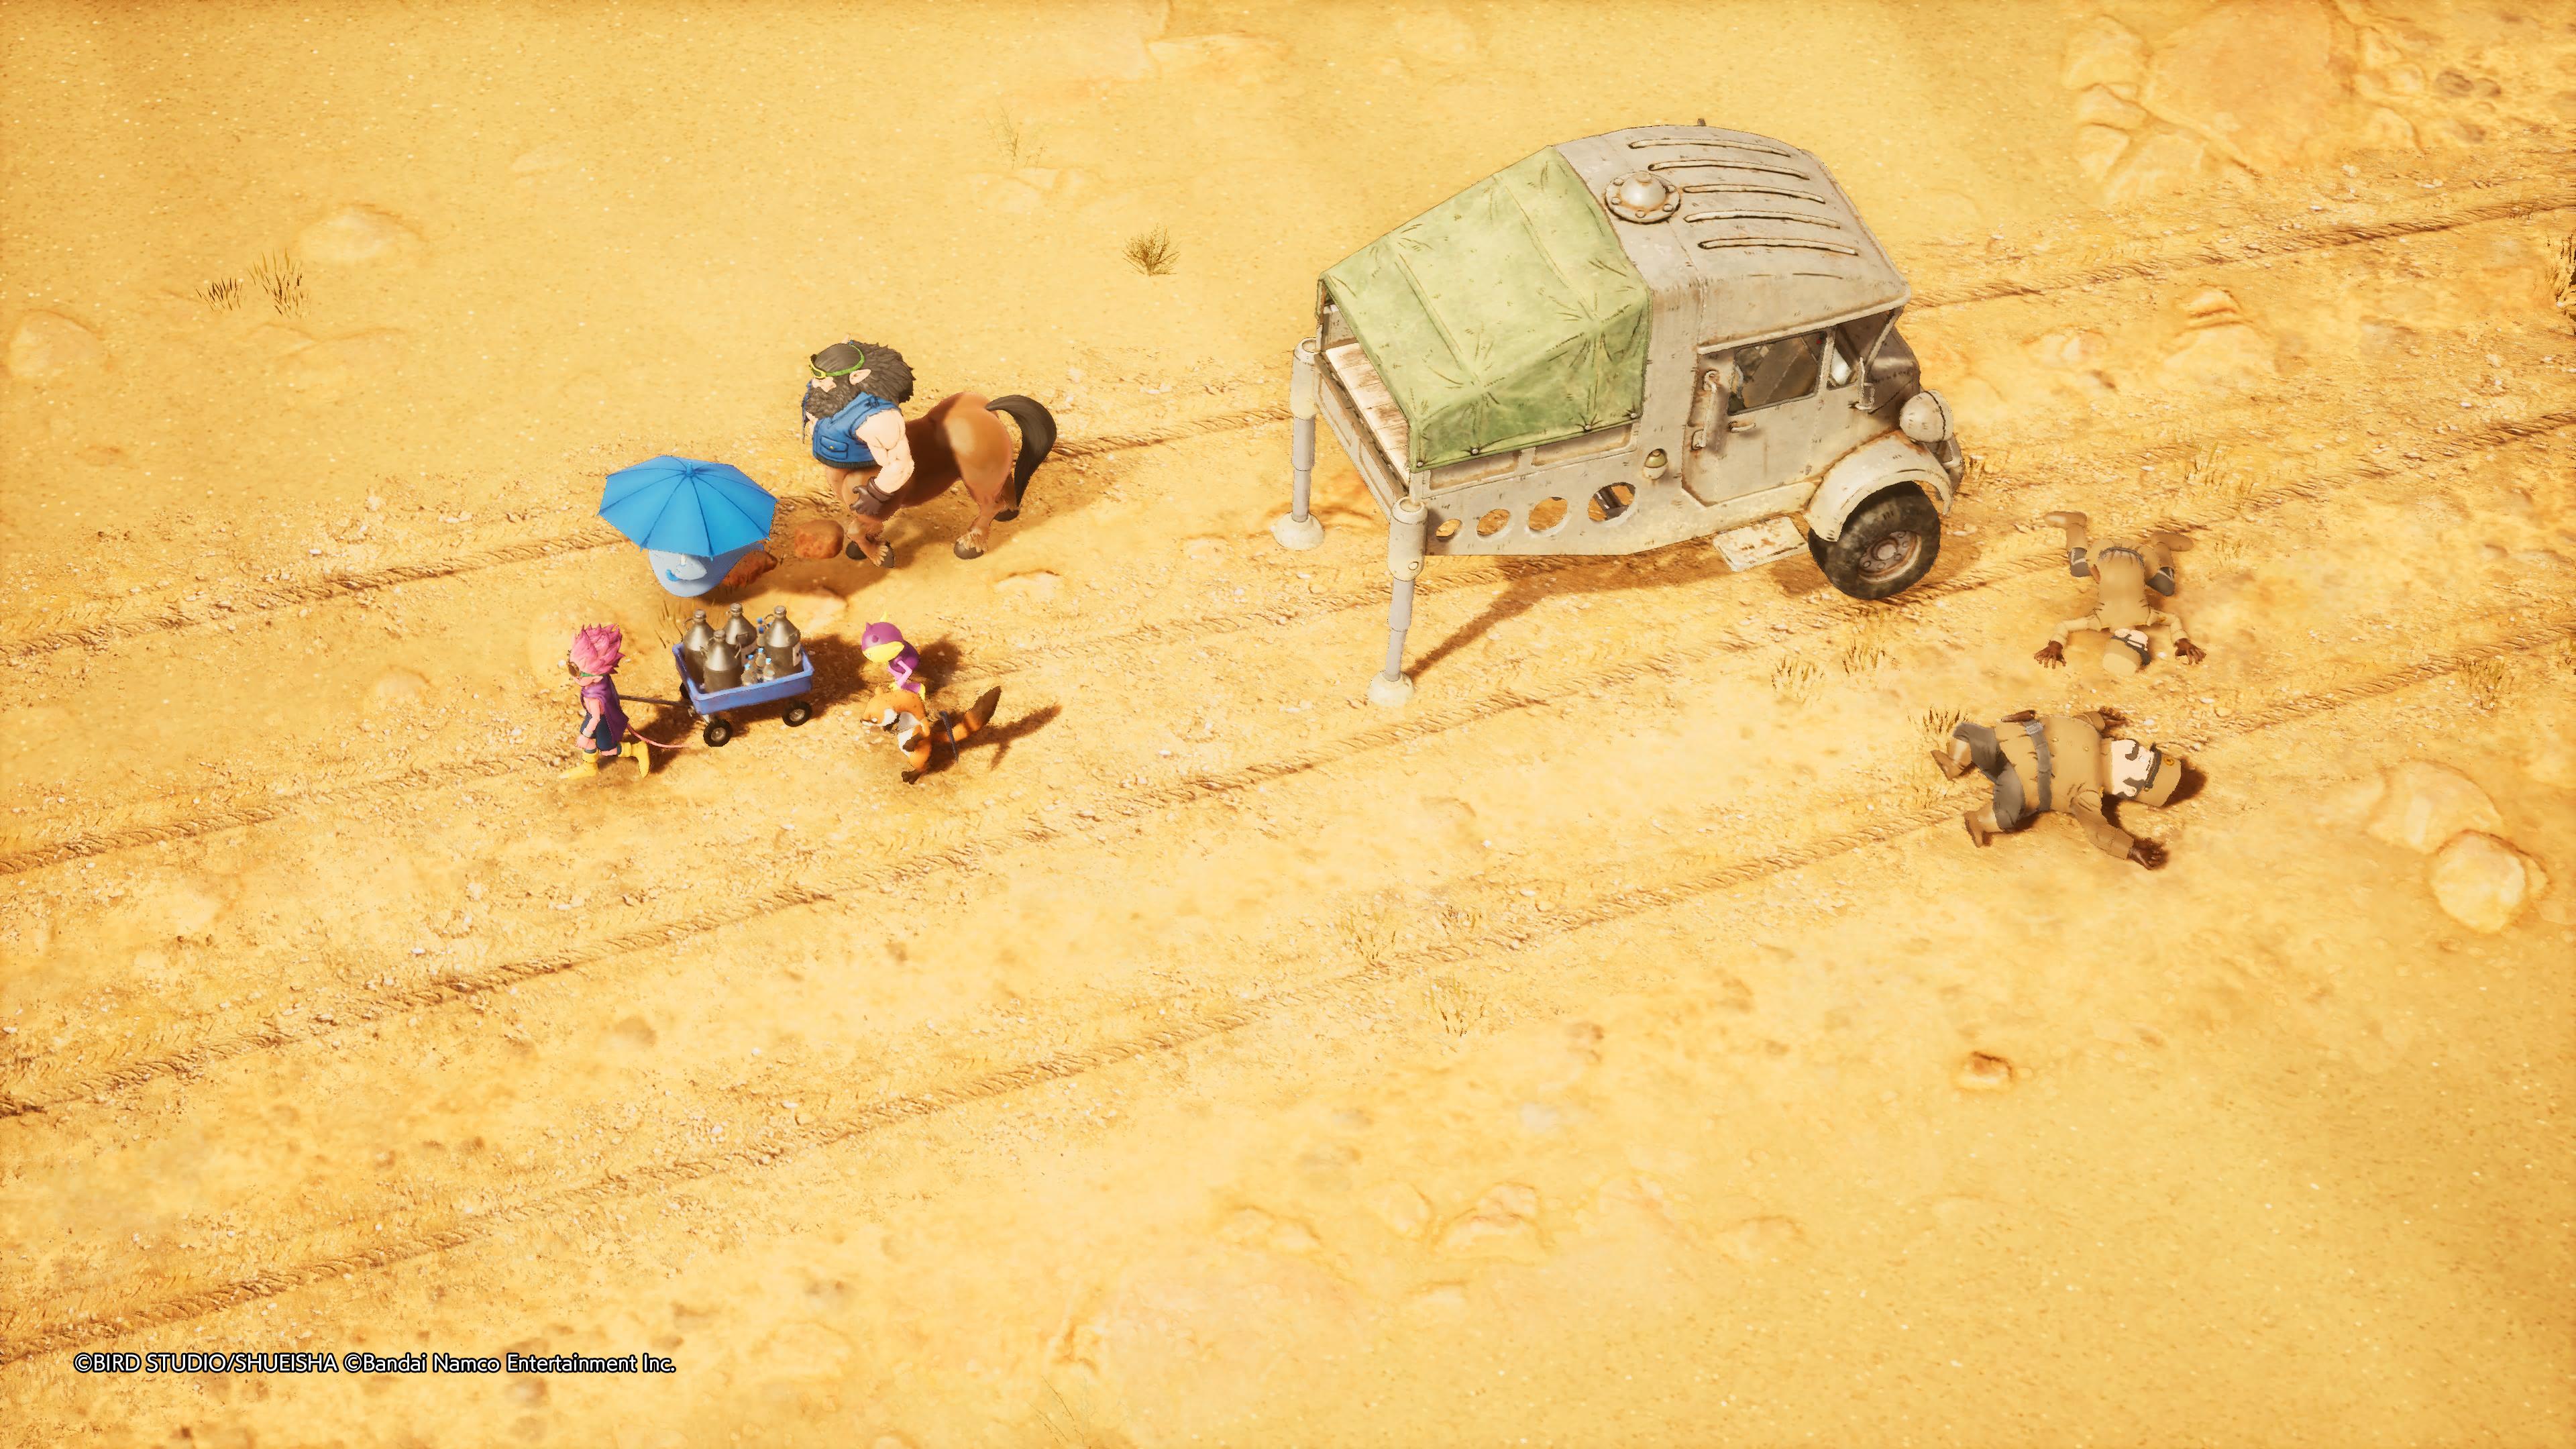 Reseña: Sand Land, una fiel adaptación de la obra de Akira Toriyama 19